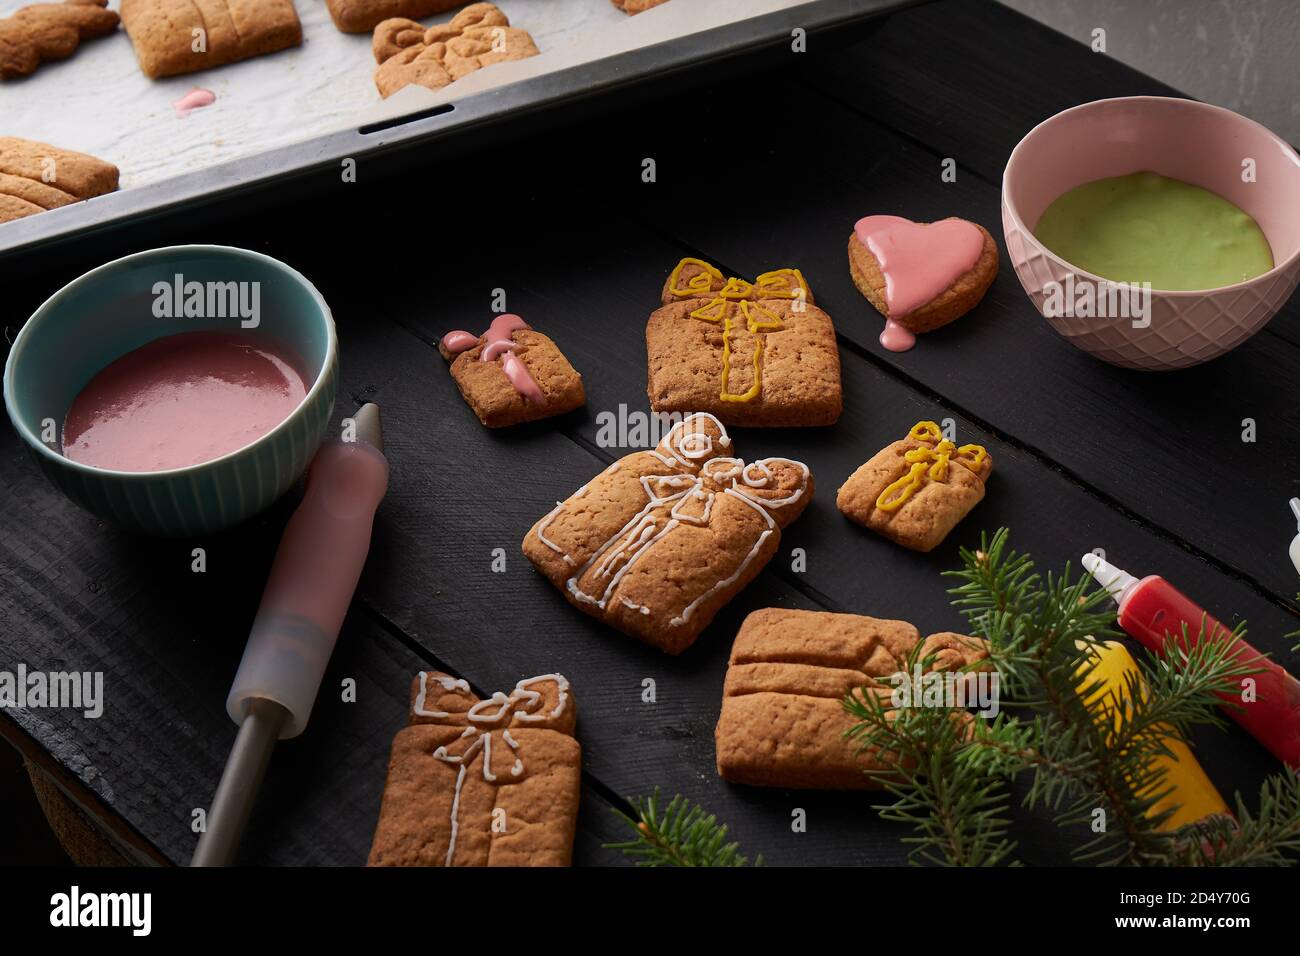 Délicieux biscuits faits maison avec glaçage sur table sombre avec branche de sapin. Concept de Noël et d'hiver Banque D'Images